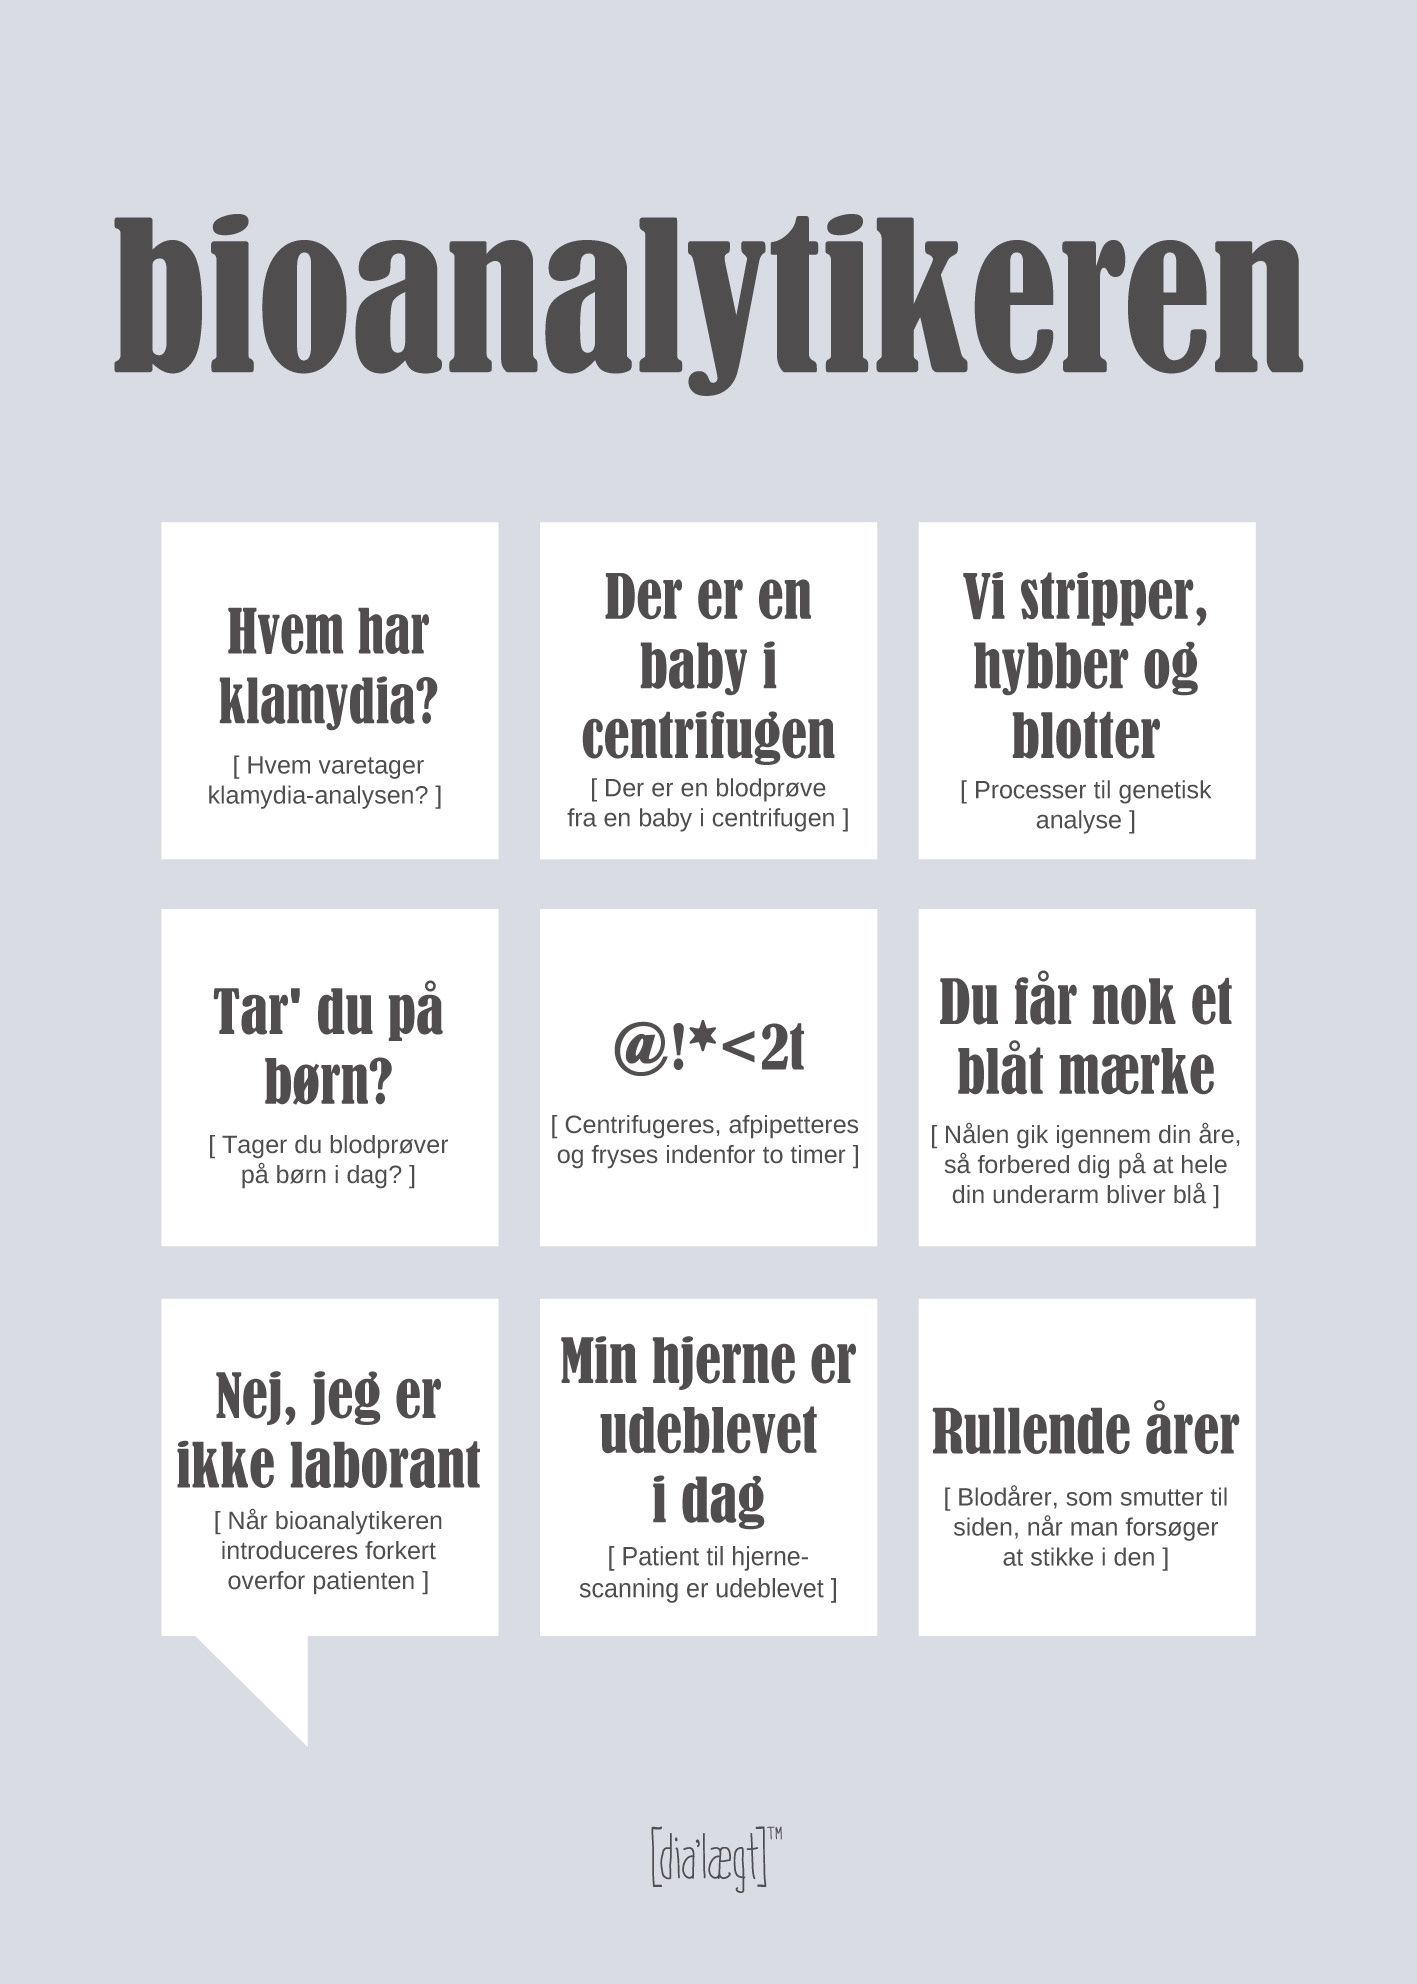 Se Bioanalytikeren-50 x 70 hos Picment.dk